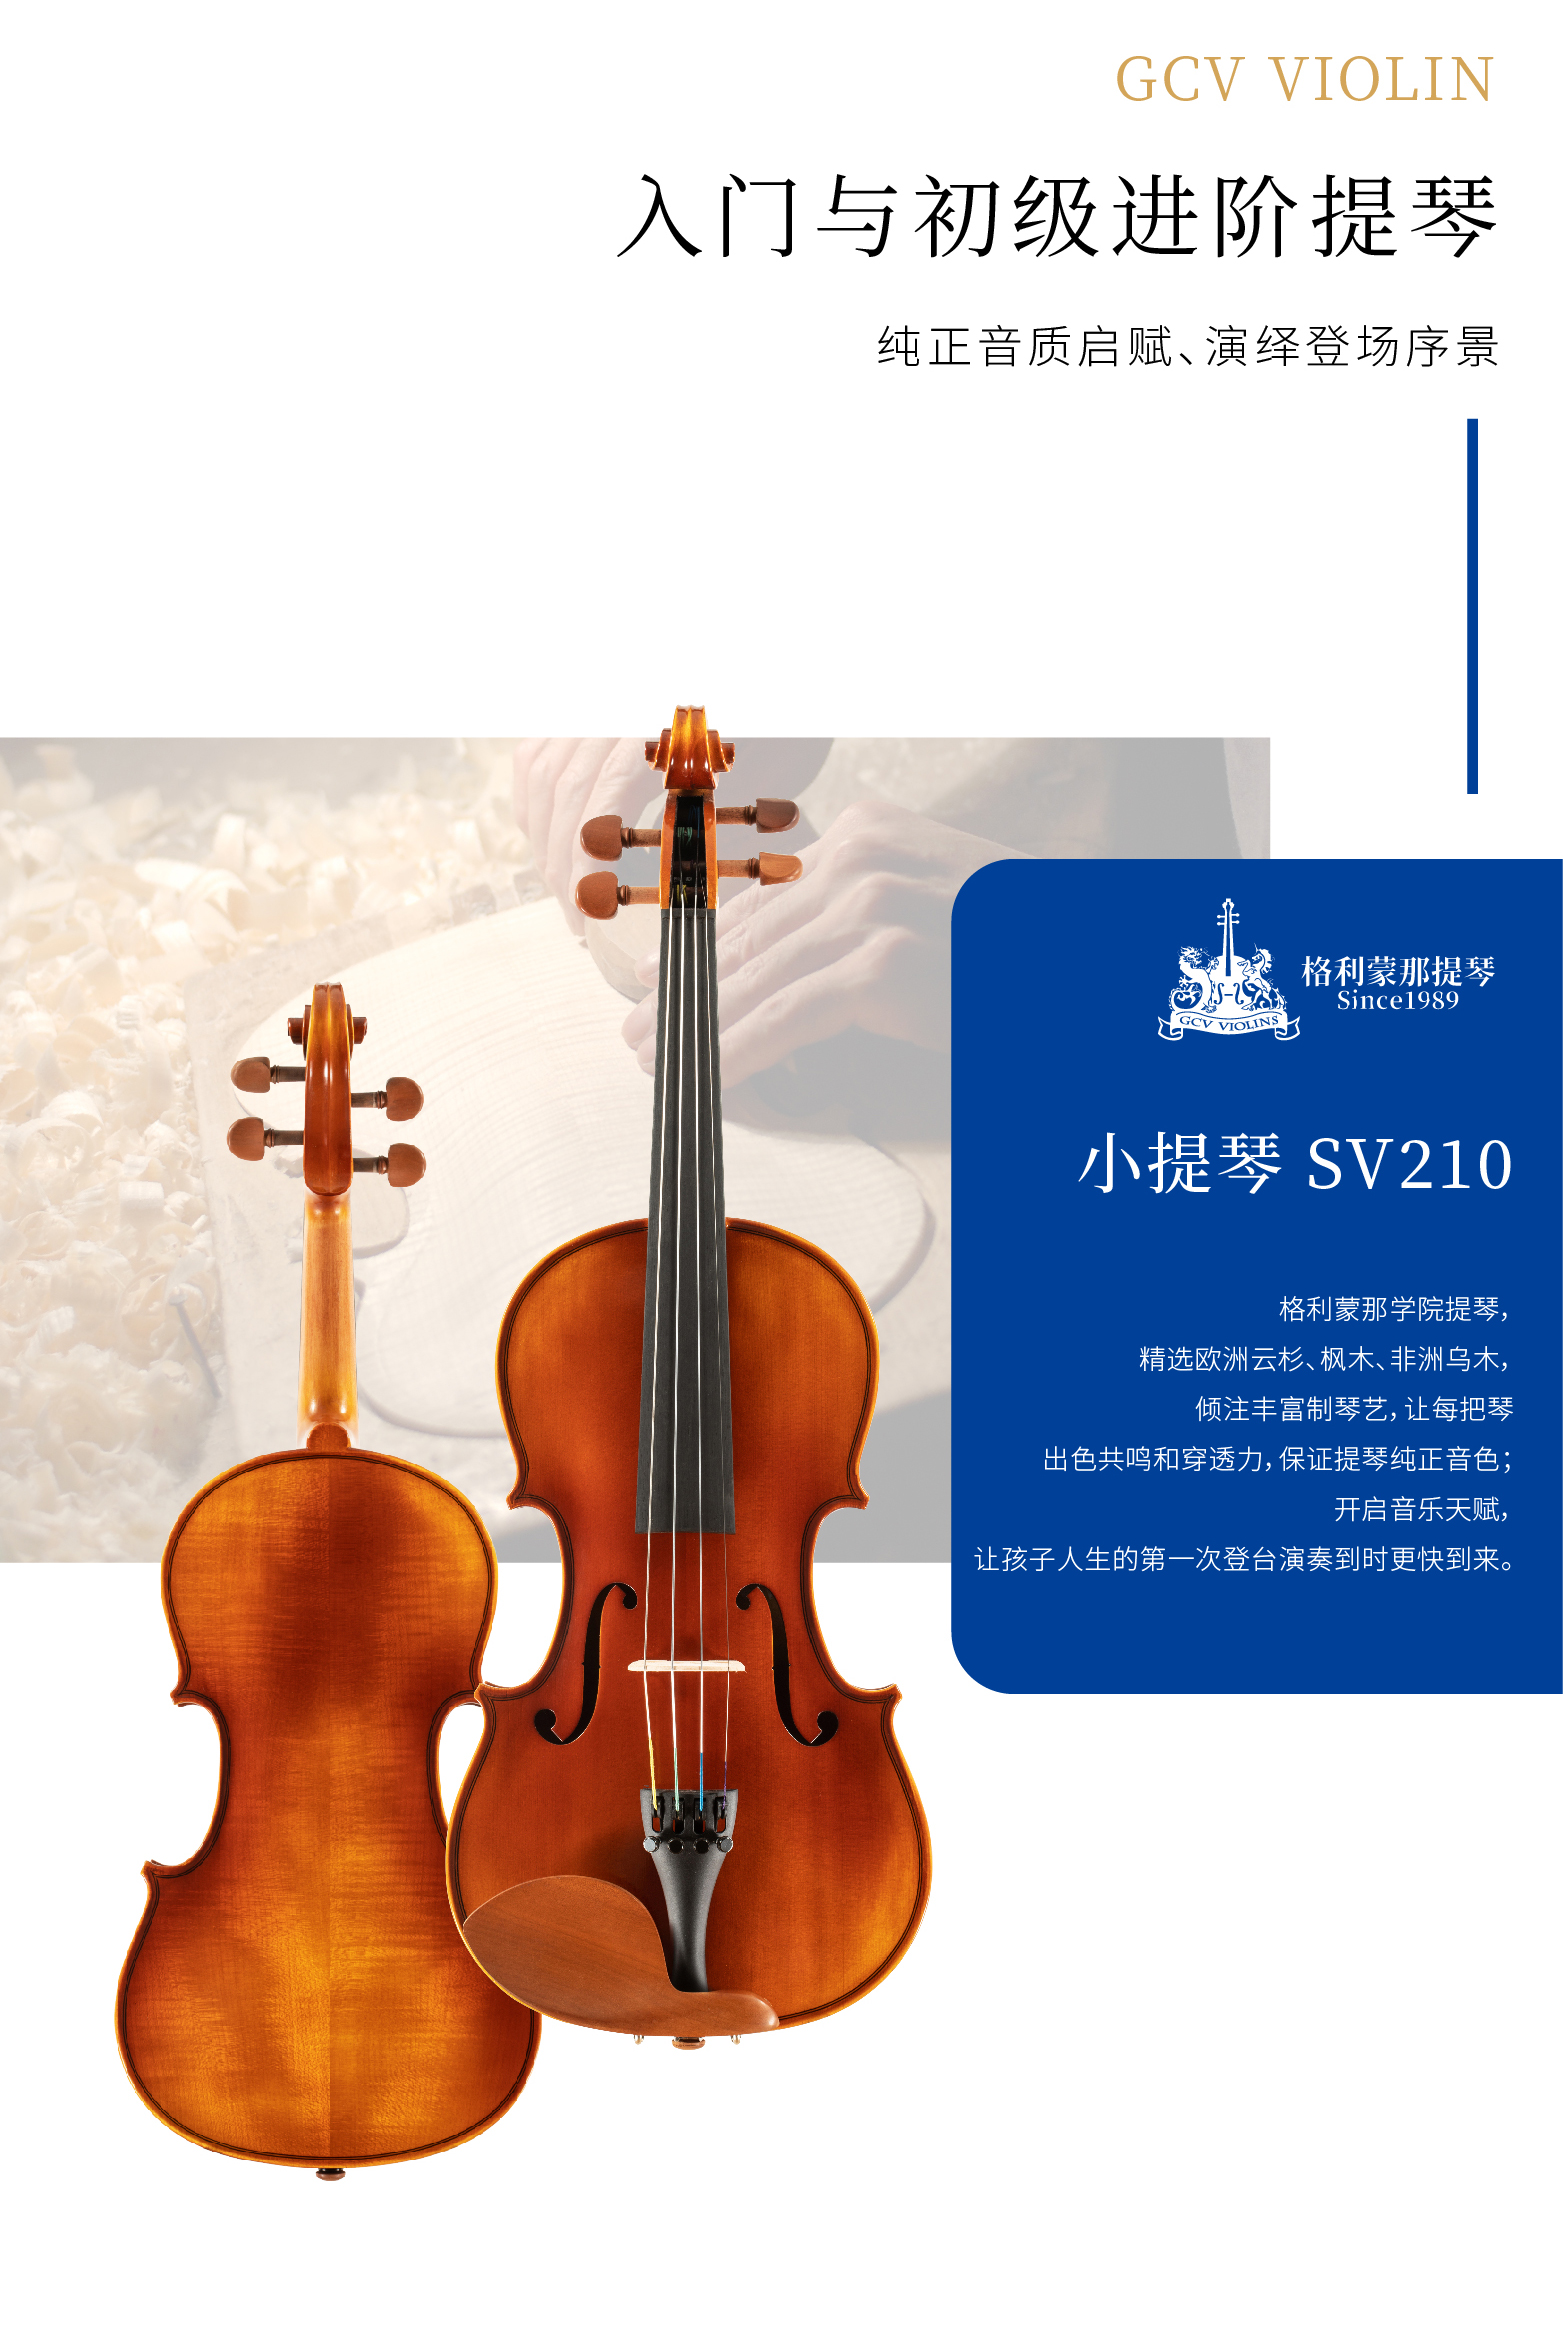 熙珑乐器专营店-详情-v1-2_SV210小提琴__02.jpg